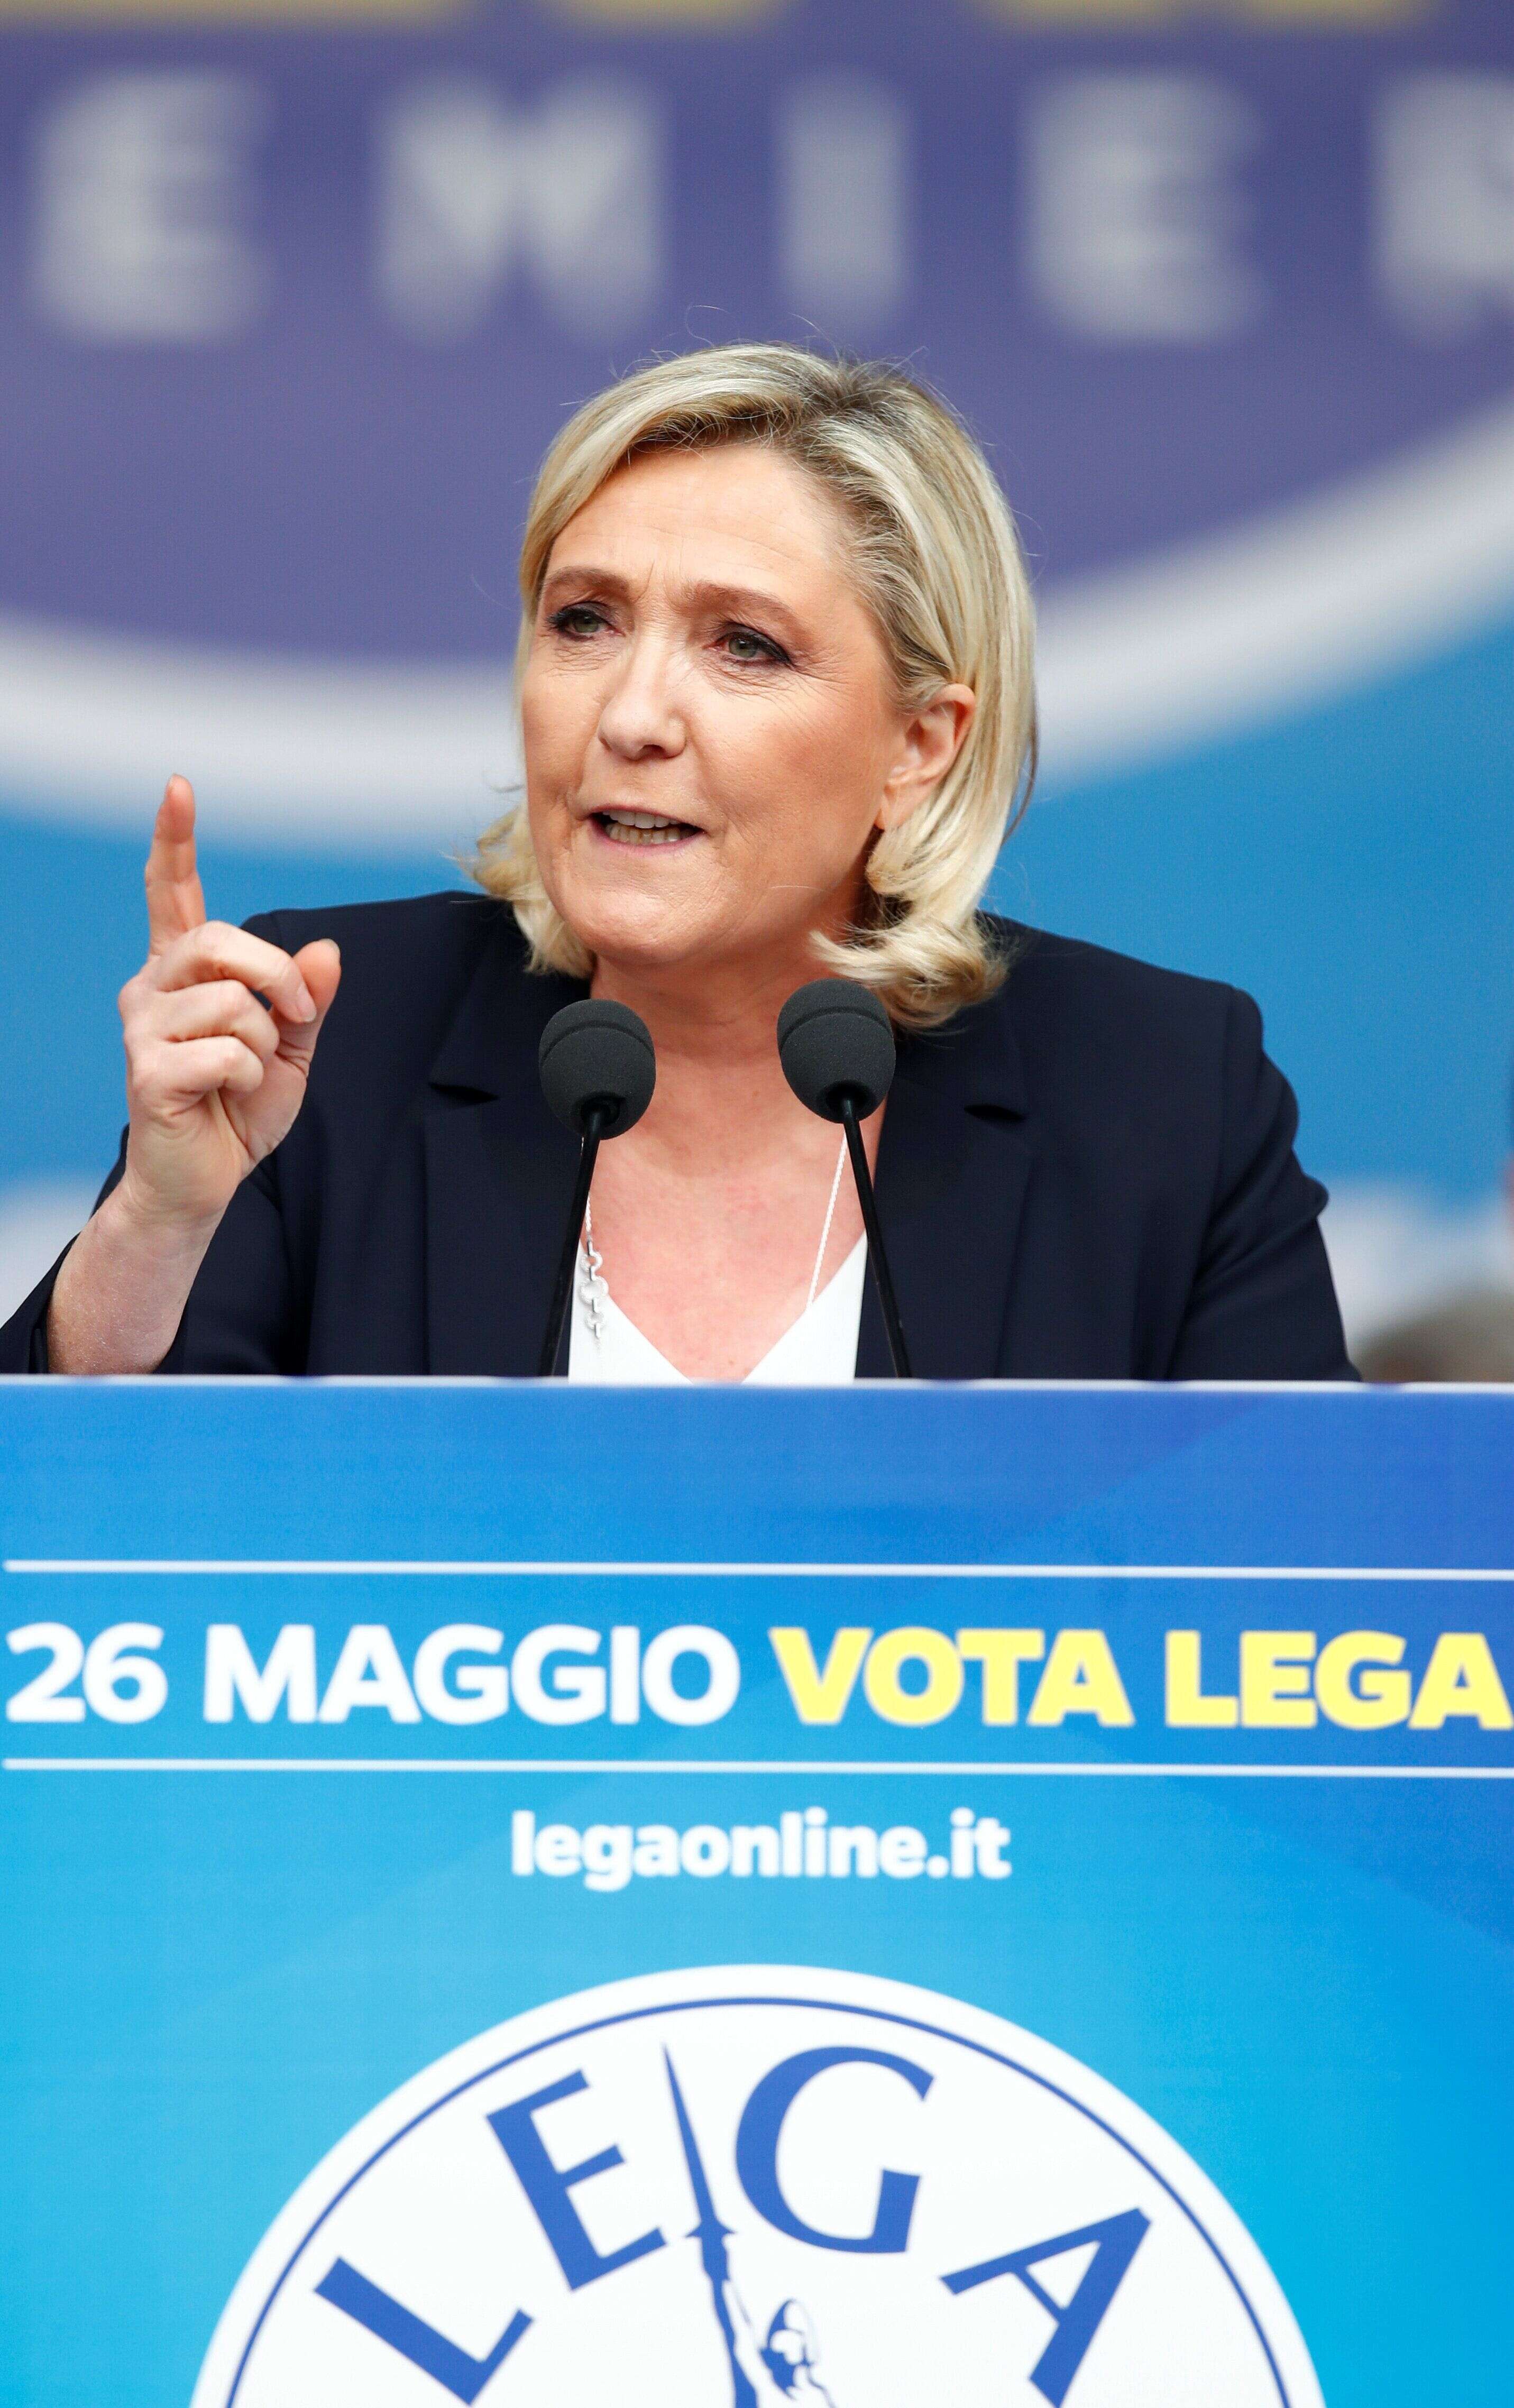 Marine Le Pen lors d'une conférence des partis d'extrême droite européens à Milan le 18 mai 2019.